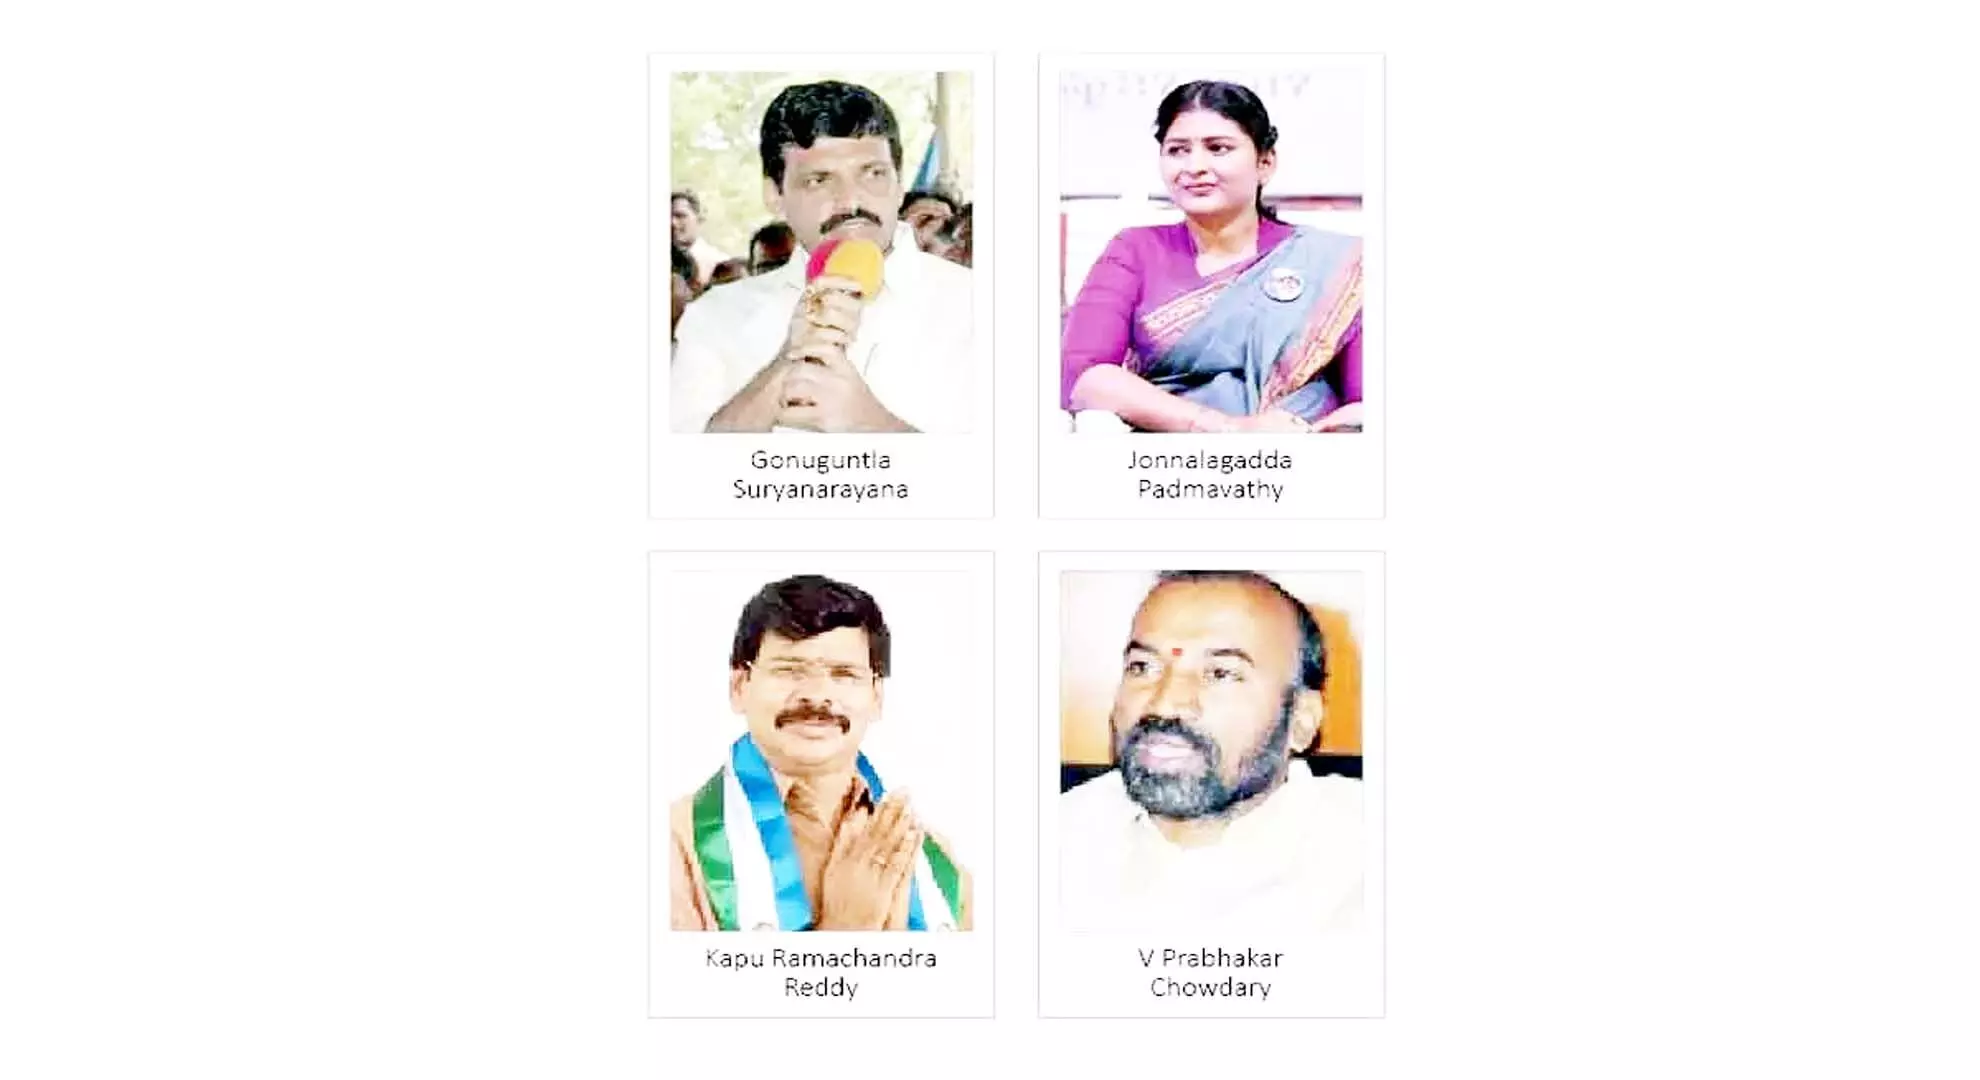 अनंतपुर जिला: बस छूटने से 4 वरिष्ठ नेता निराश